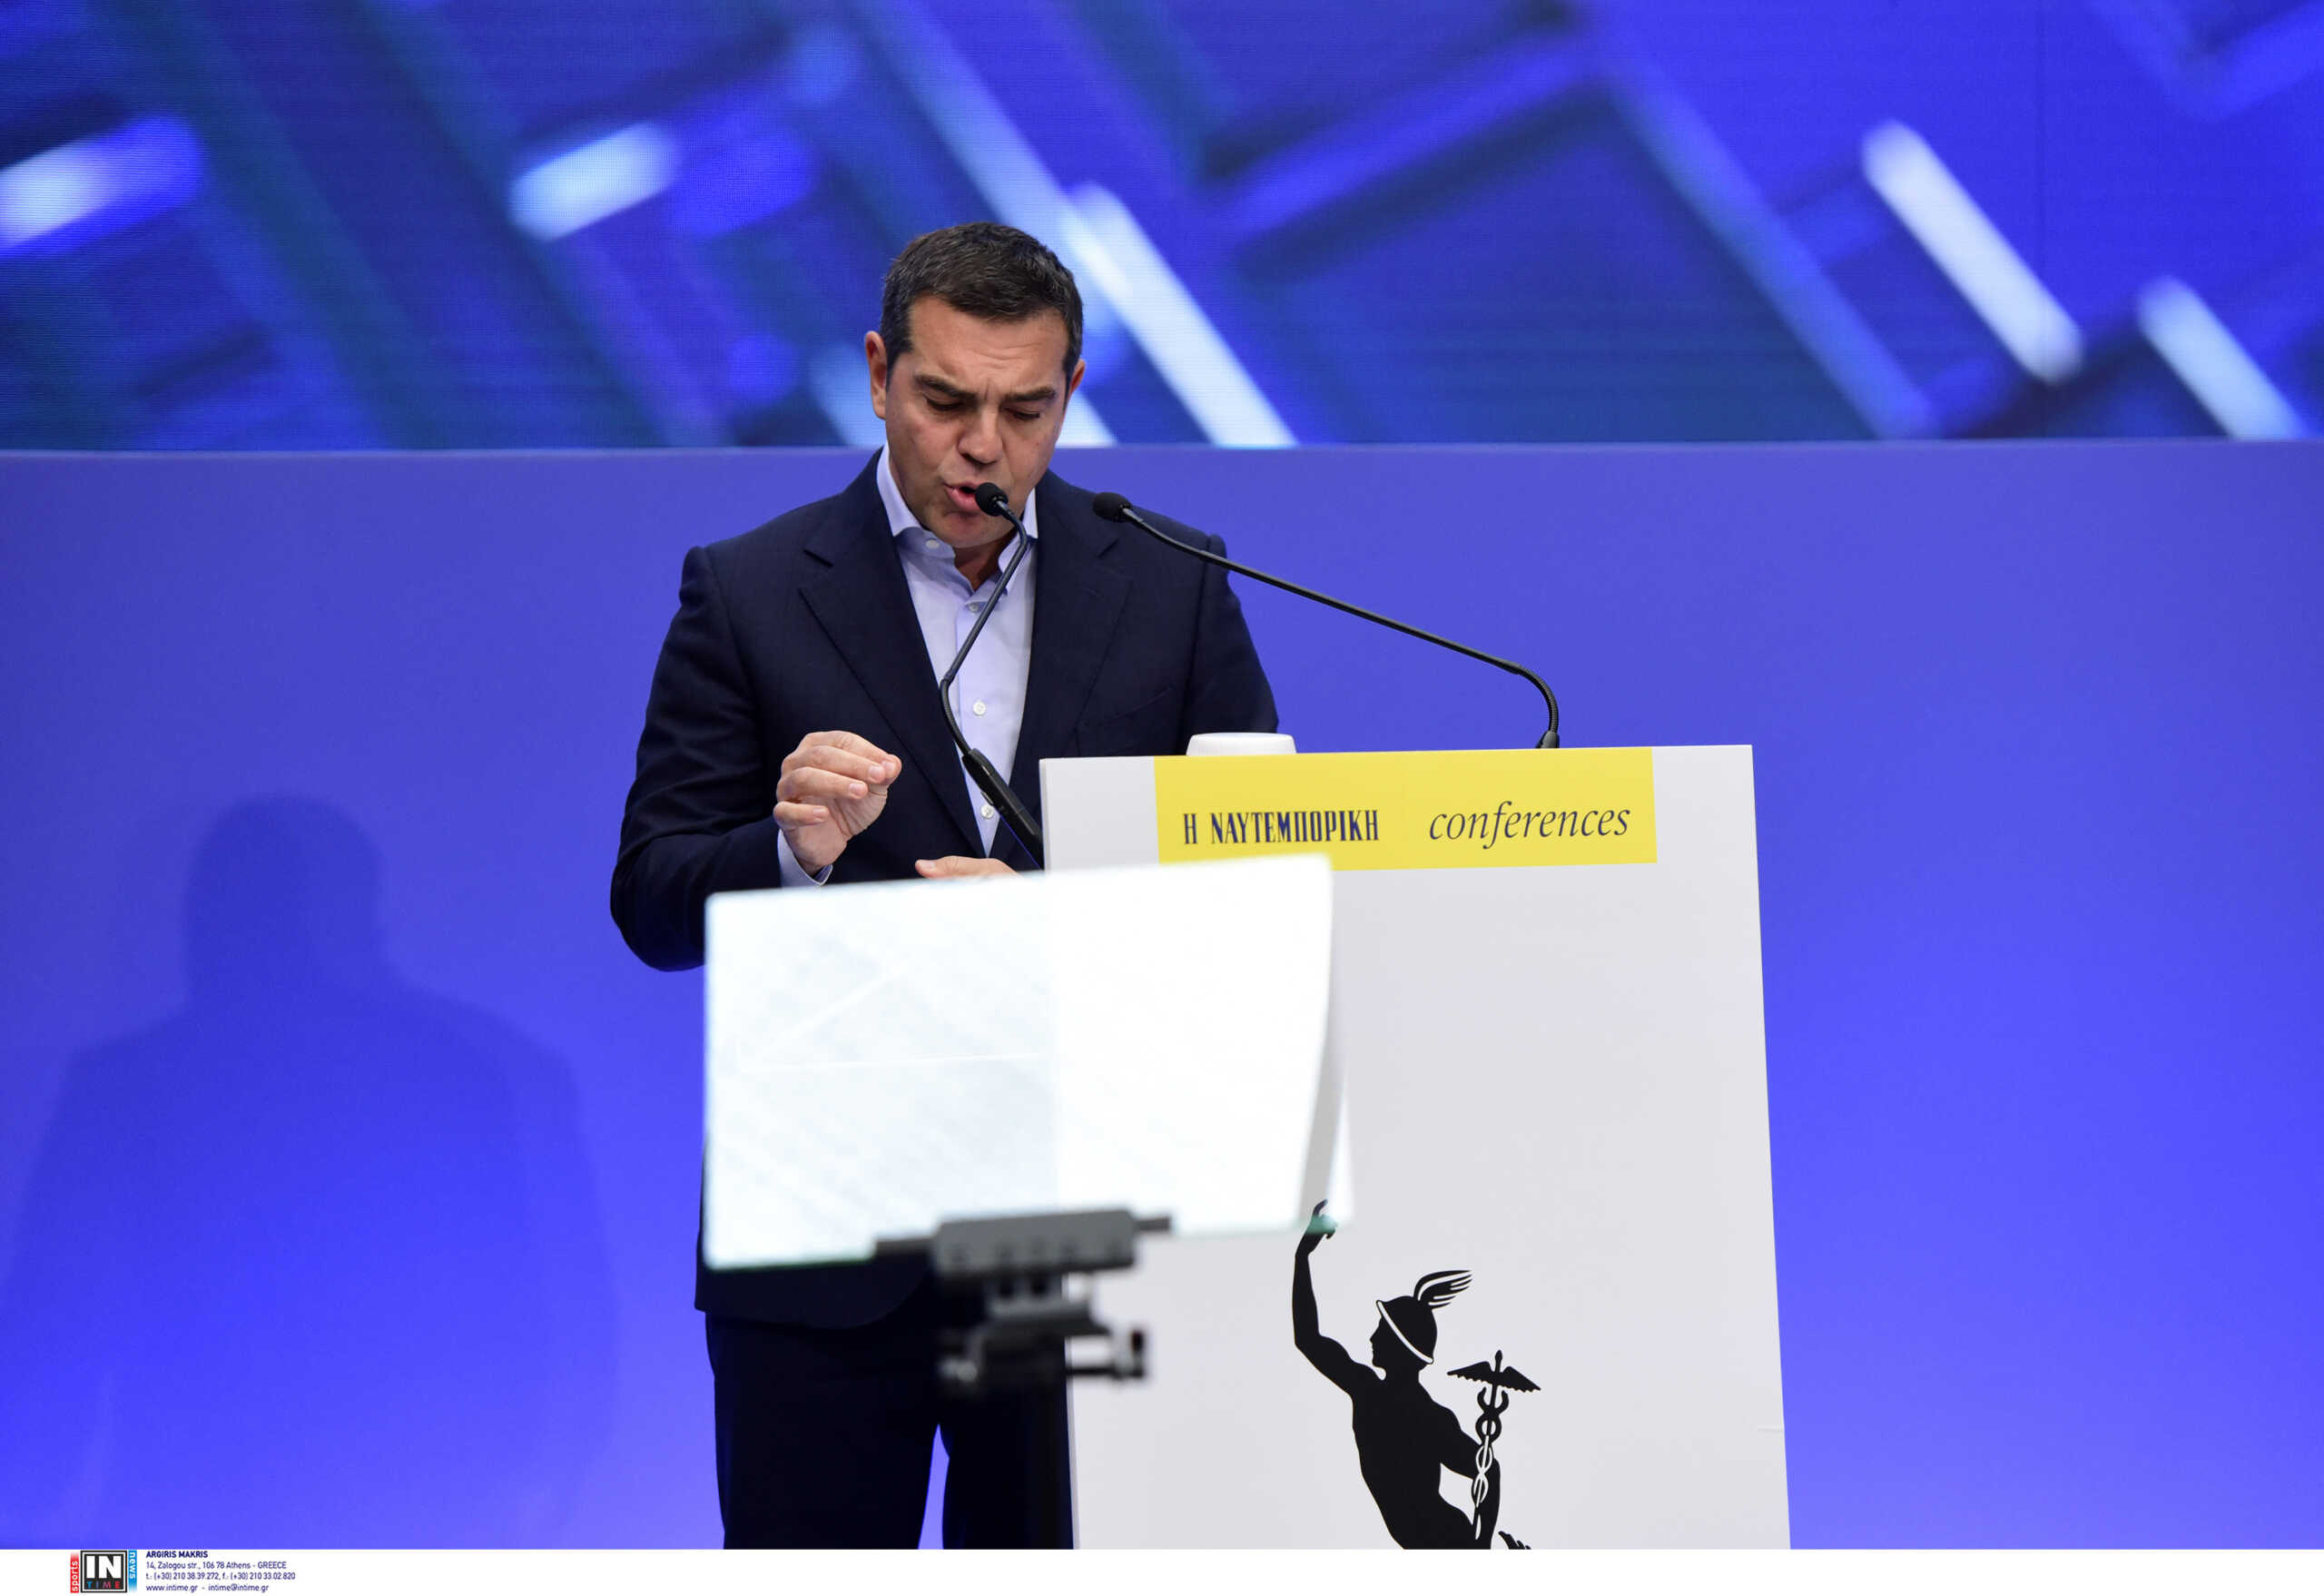 Αλέξης Τσίπρας: «Ο πρωθυπουργός δεν μυρίζει εκλογές, τις προκηρύσσει»